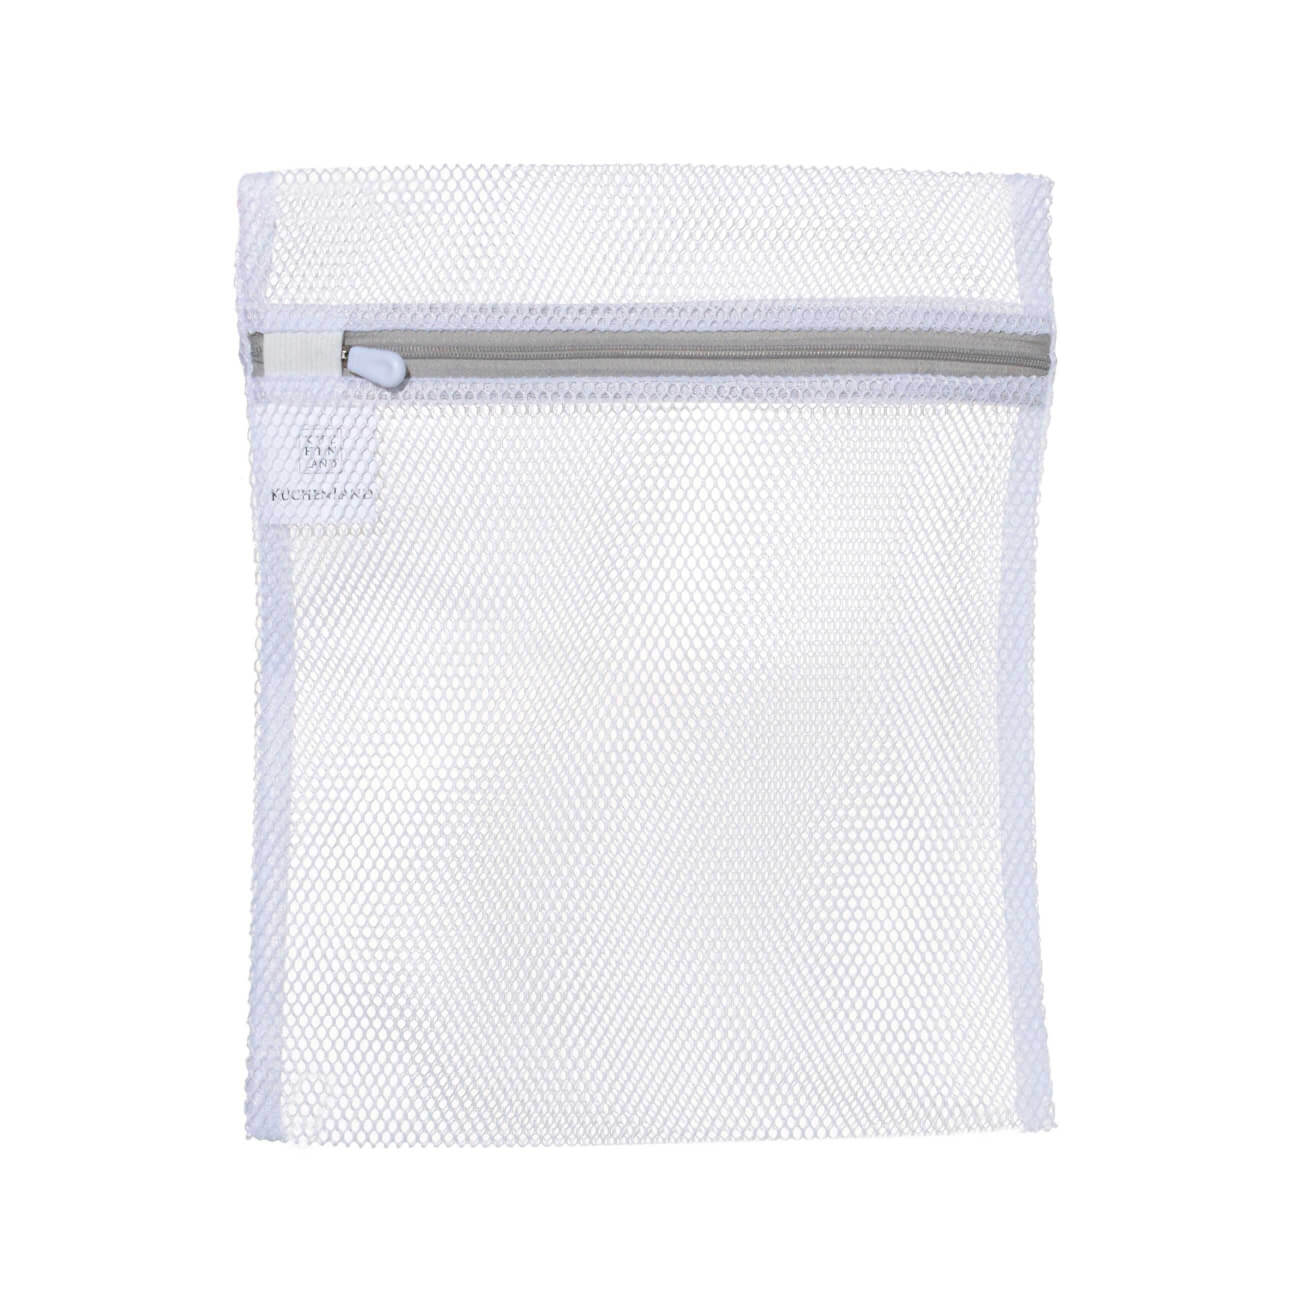 Мешок для стирки нижнего белья, 25х30 см, полиэстер, бело-серый, Safety мешок для стирки бюстгалтеров 17х15 см с защитой полиэстер бело серый safety